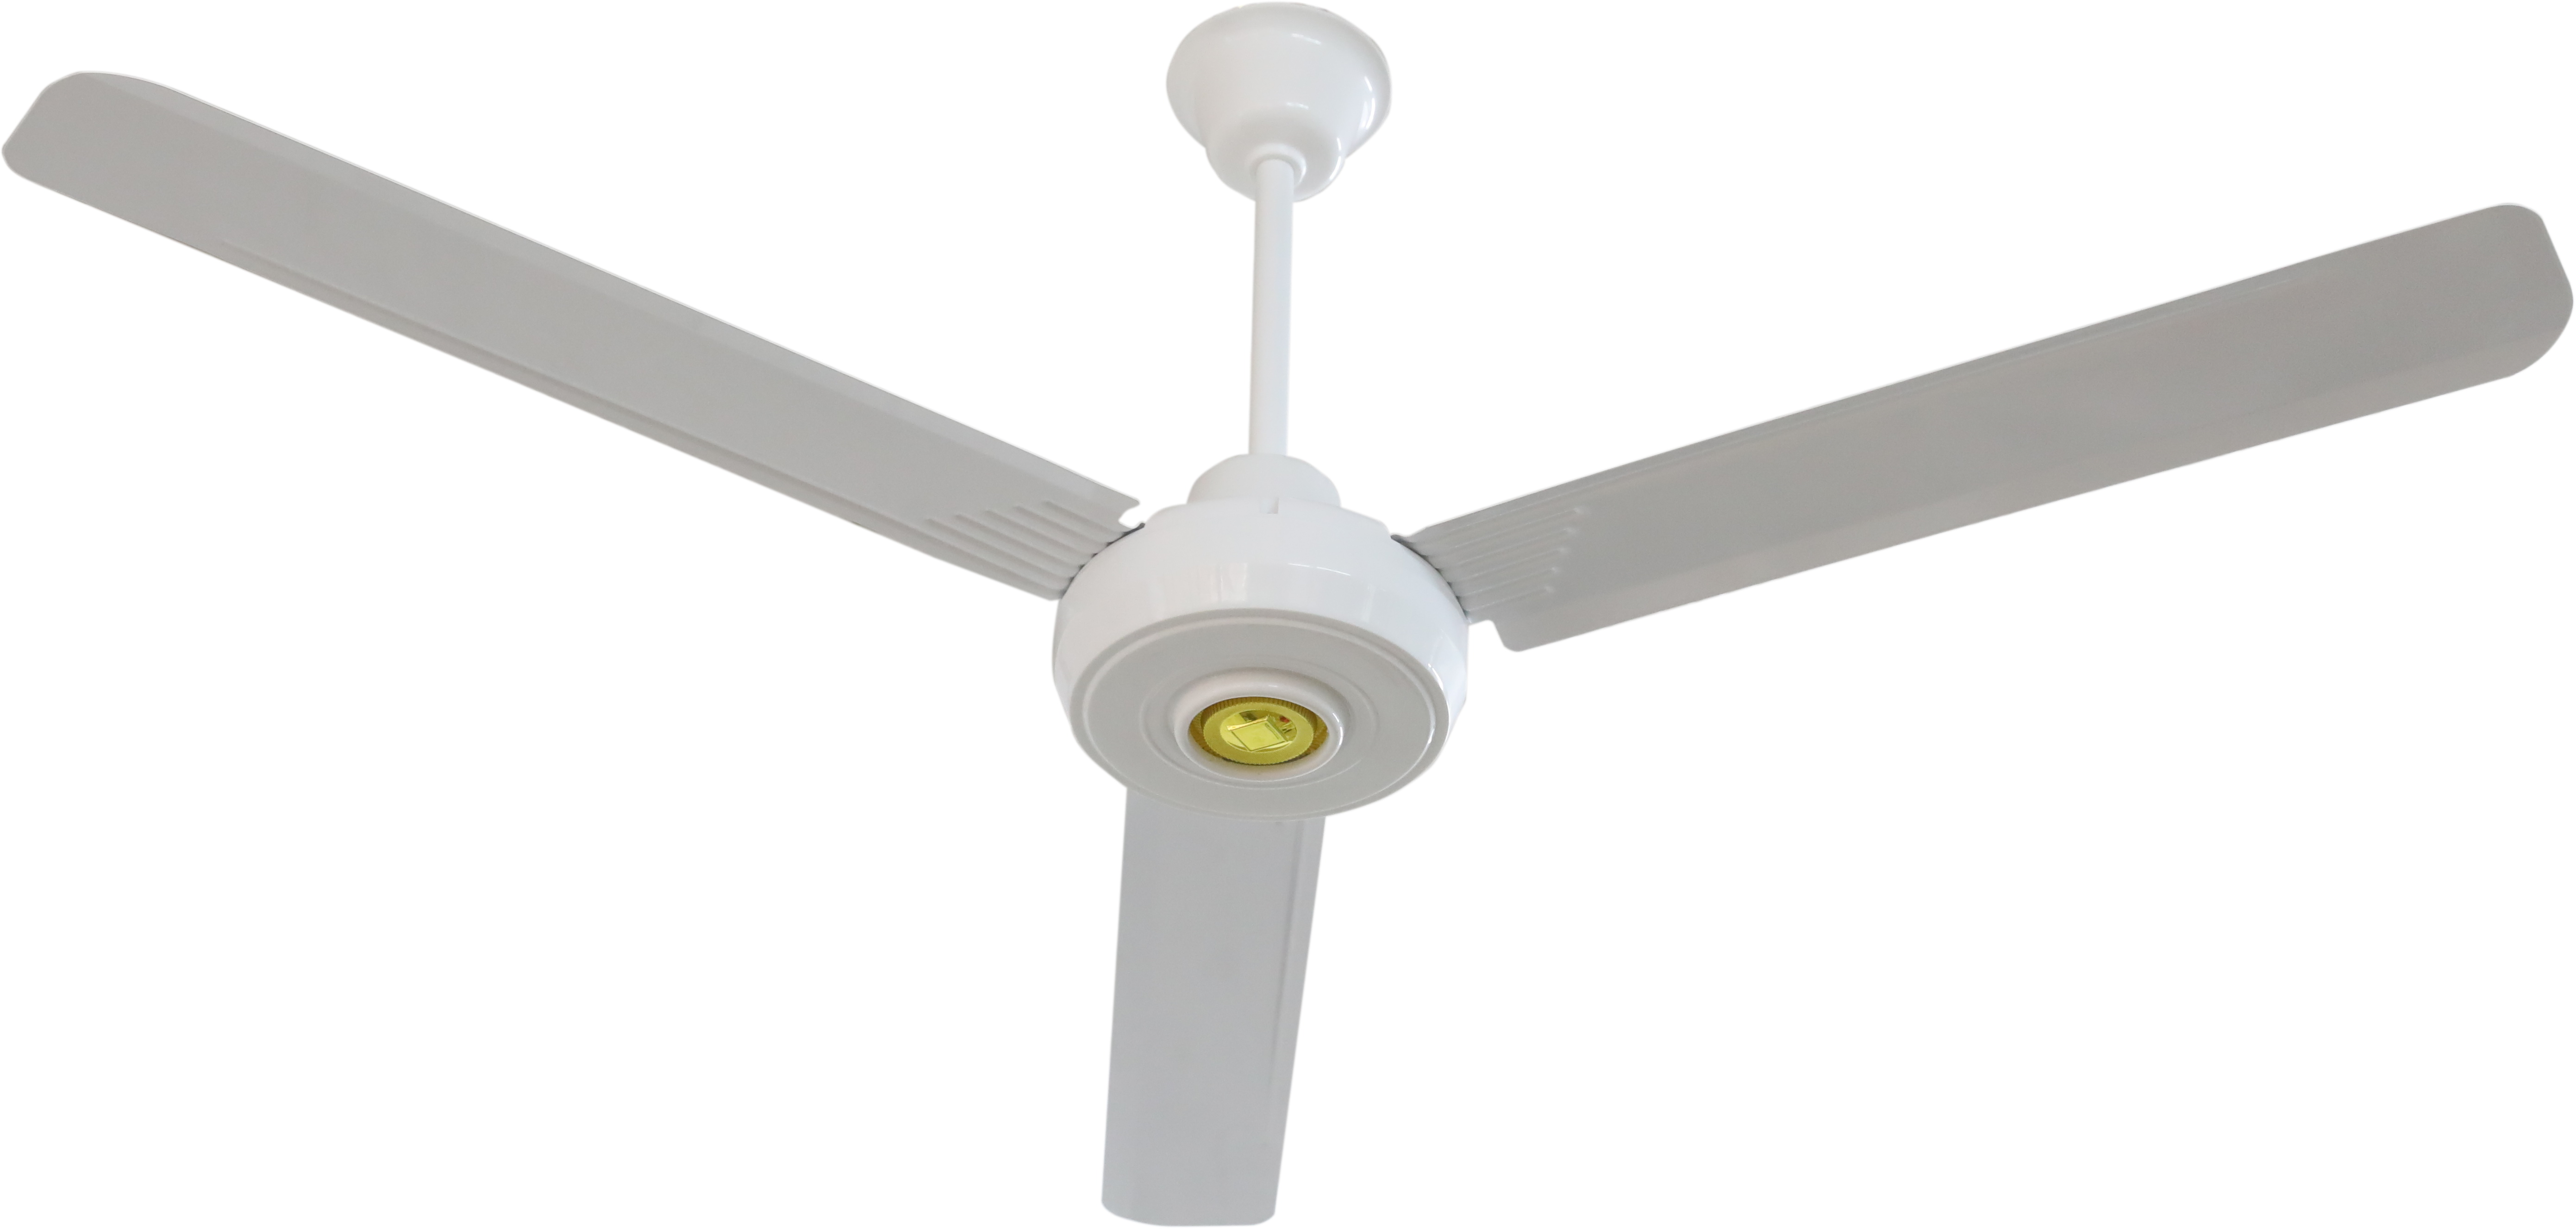 56 inch ceiling fan